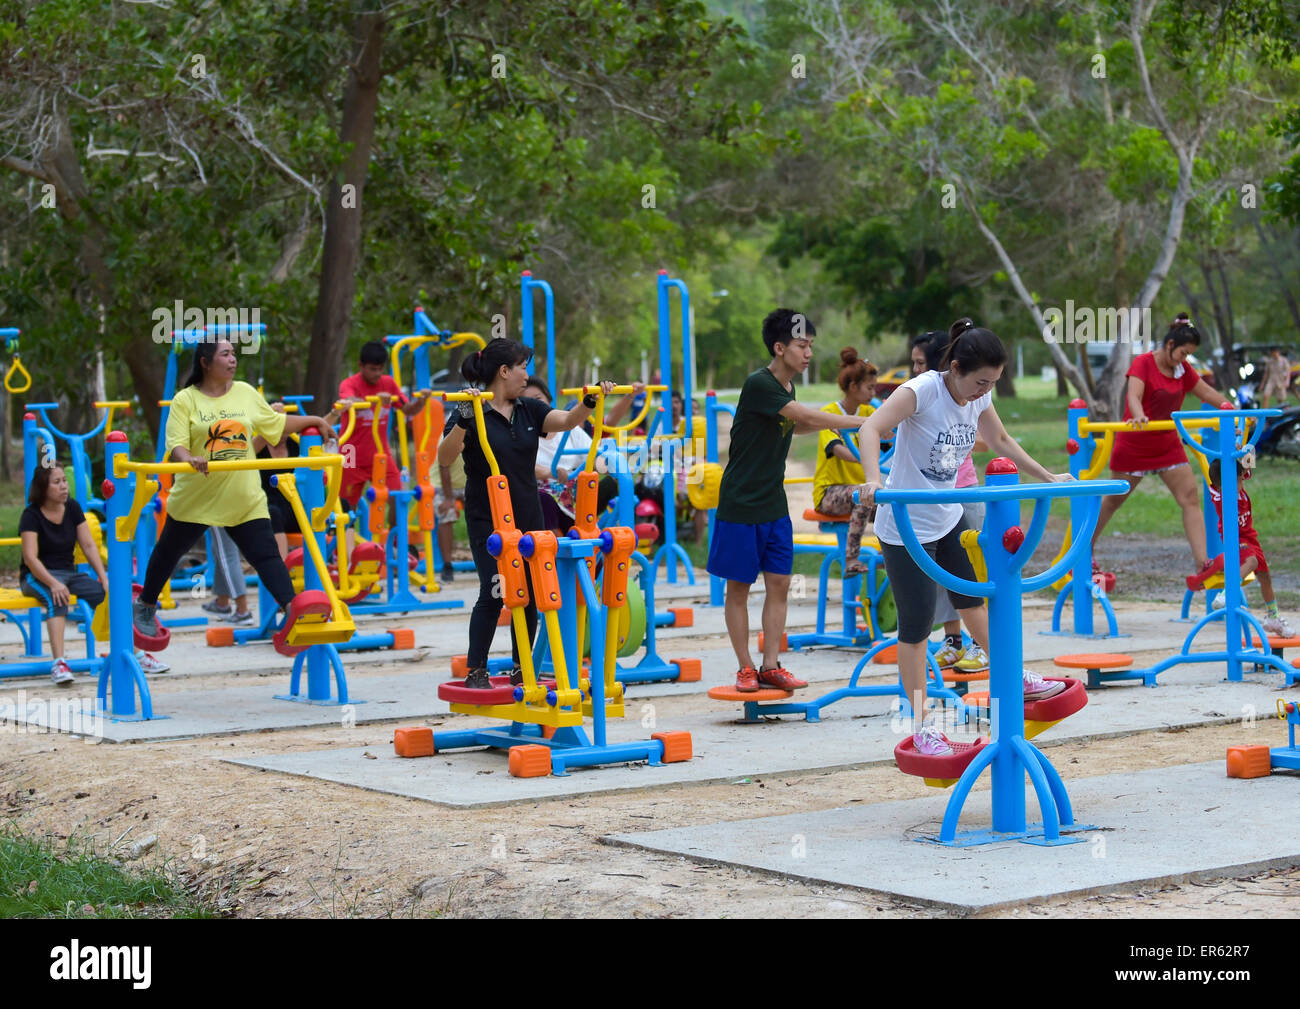 Hobbysportler, die Ausbildung auf Open-Air-Fitness-Geräte, Lamai, Koh Samui, Thailand Stockfoto